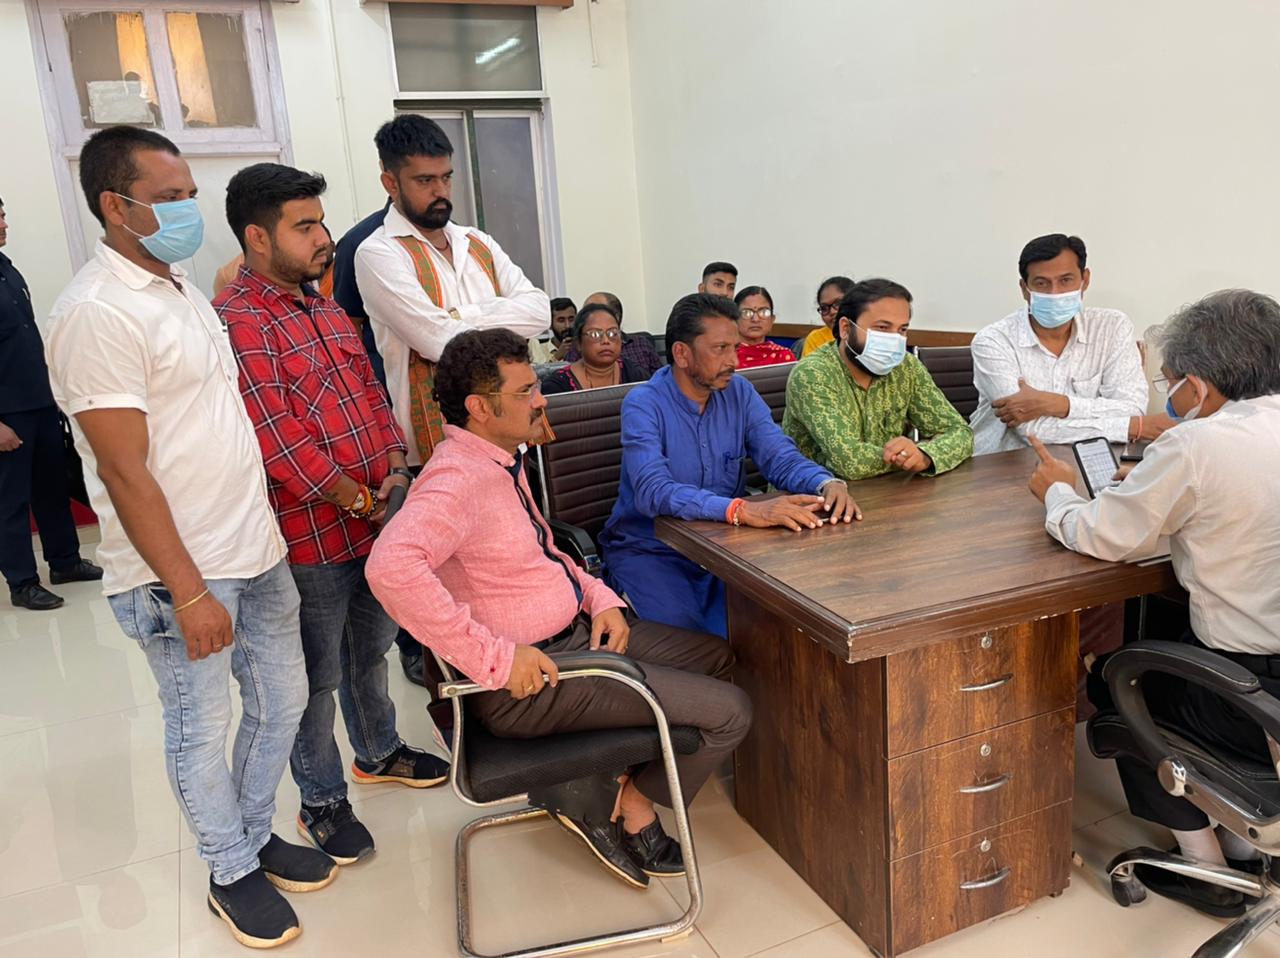 स्वास्थ्य व्यवस्थाओं व डेंगू मरीजों की जानकारी लेने भाजपा नेता पहुंचे महारानी अस्पताल